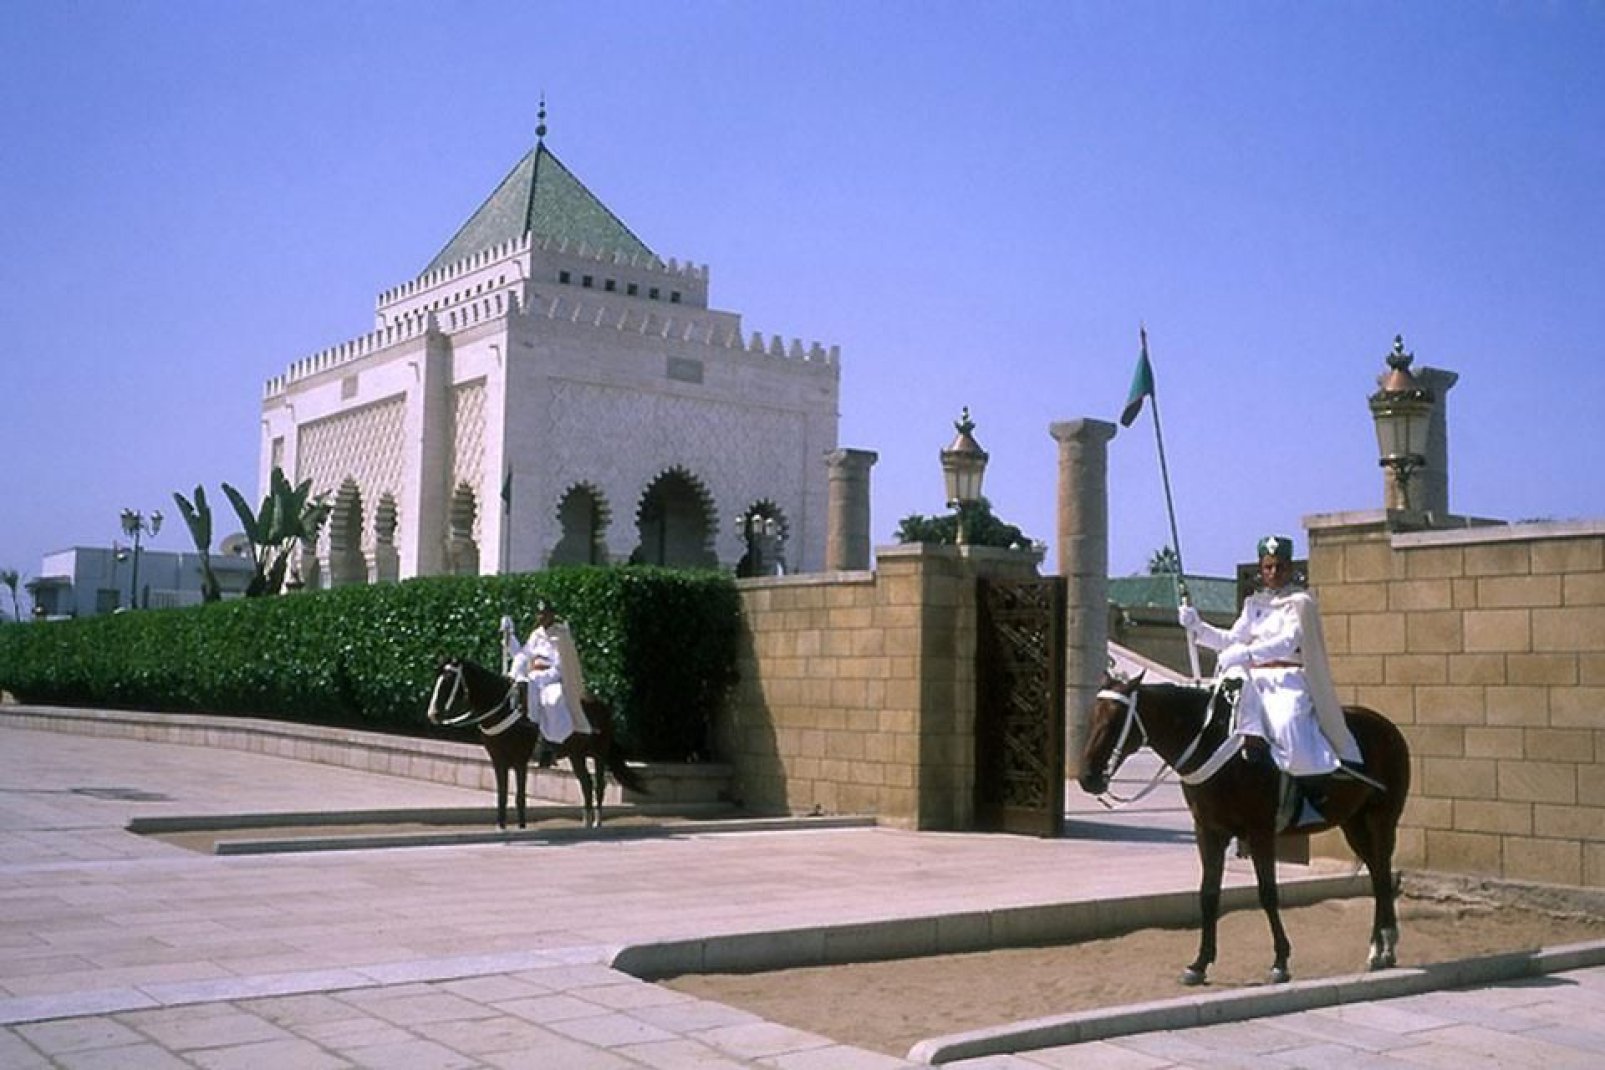 La entrada de la Torre Hassan está vigilada por dos guardias montados a caballo. La torre mide 45 metros.